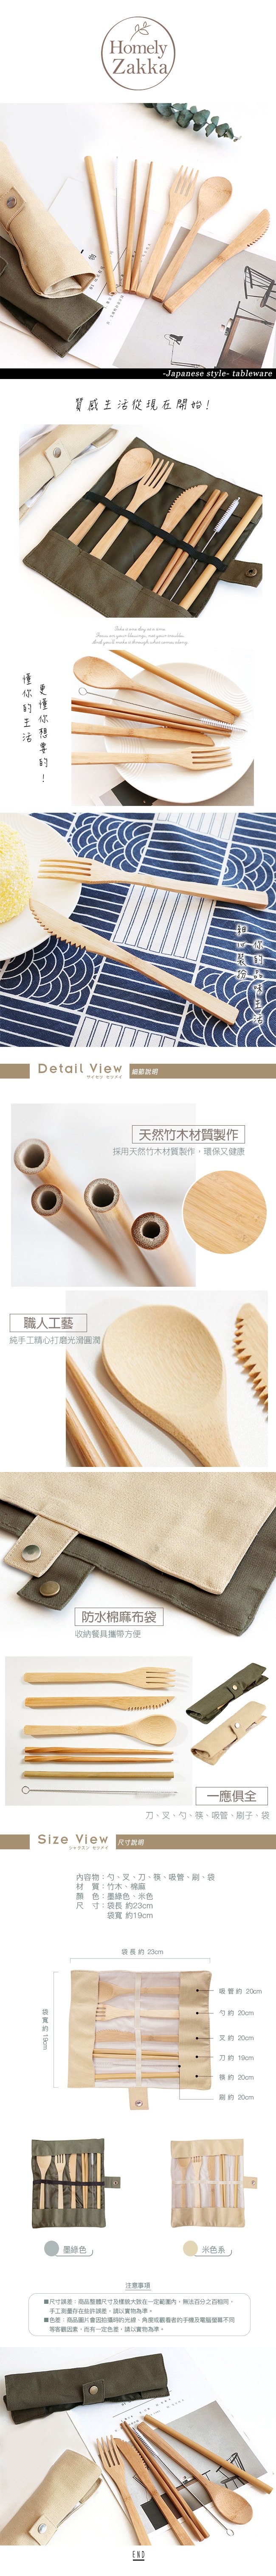 【Homely Zakka】日式便攜木質餐具套裝7件組(兩色一組)